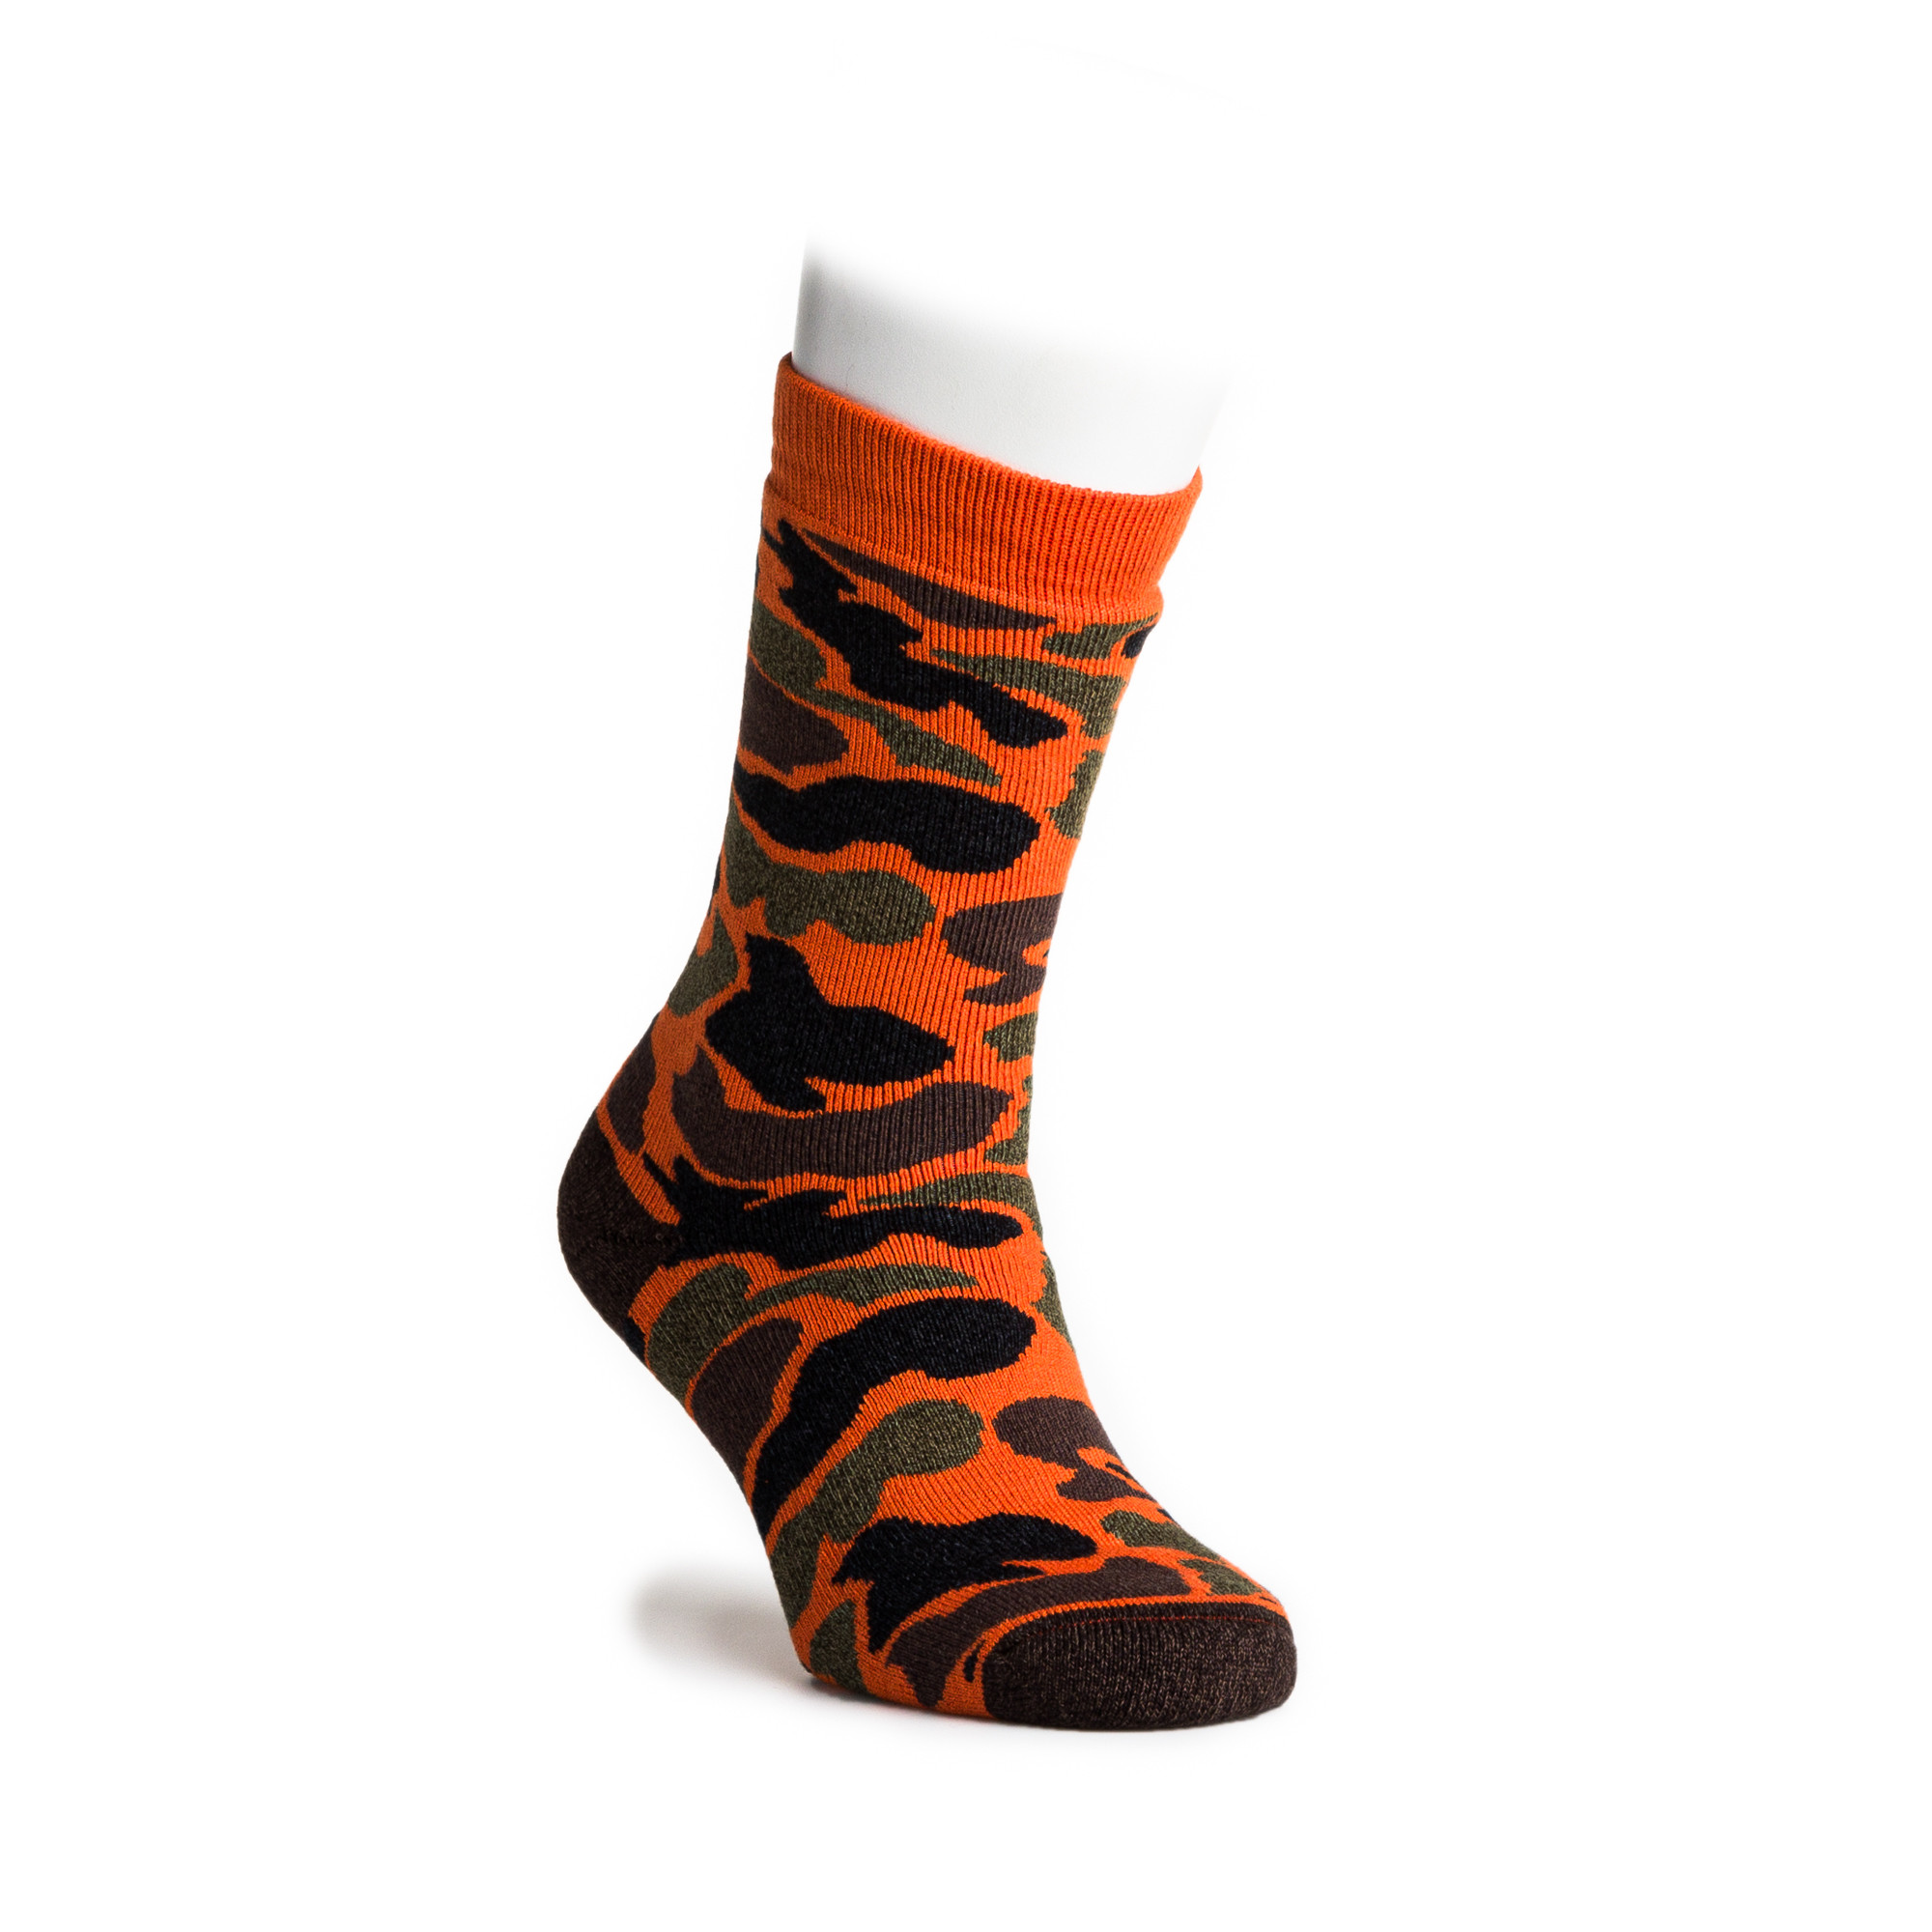 Rototo - Camo Crew Socks in Orange